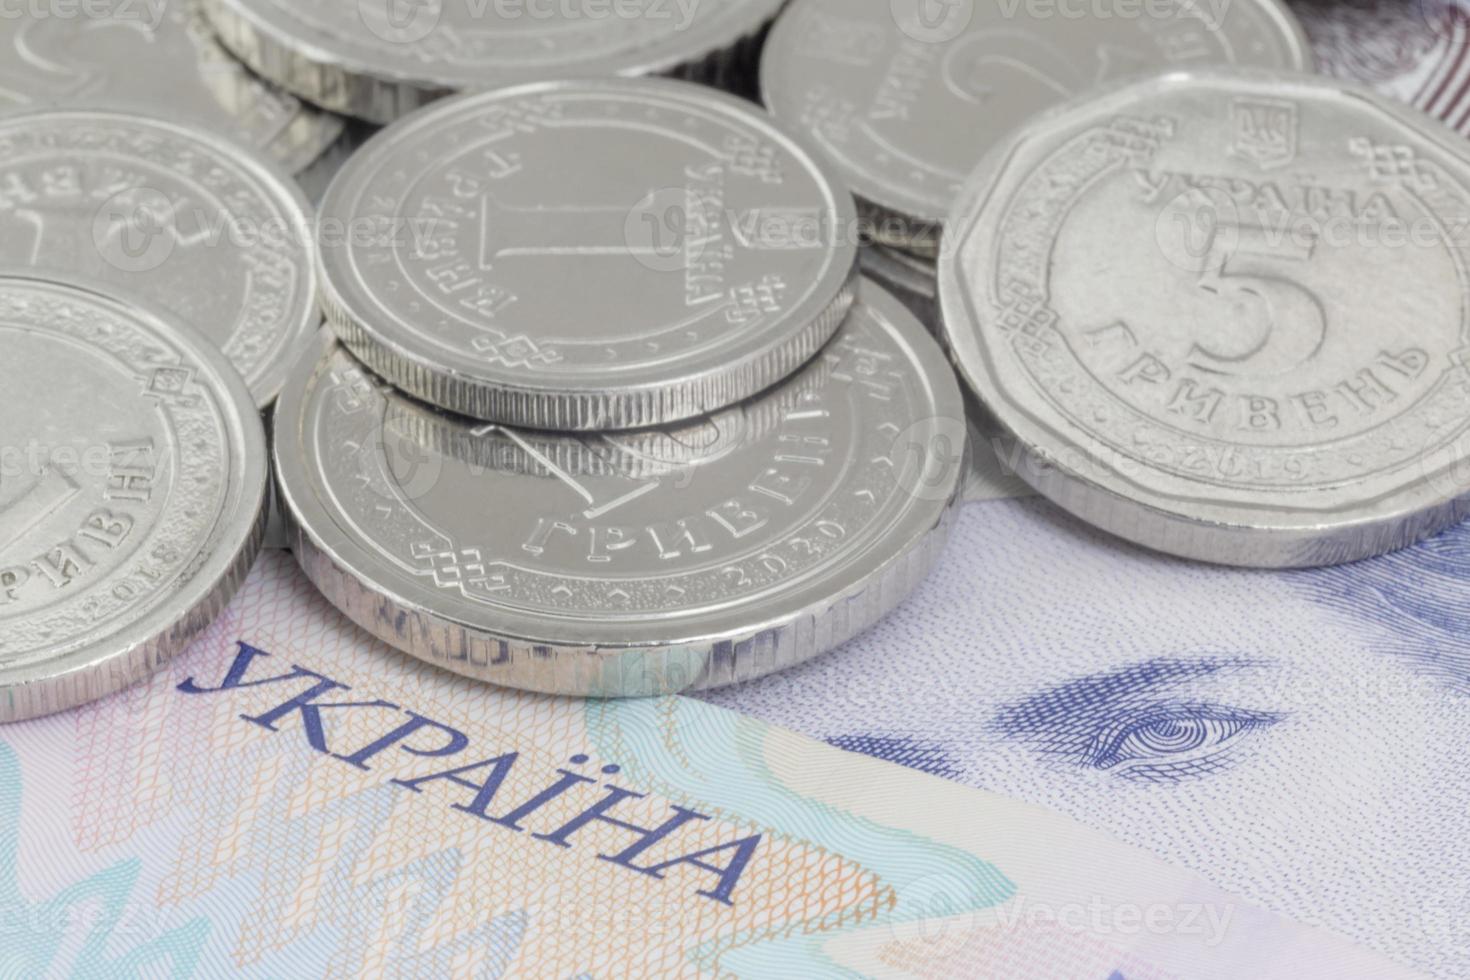 ukrainisch Griwnja Münzen Lügen auf Banknoten foto